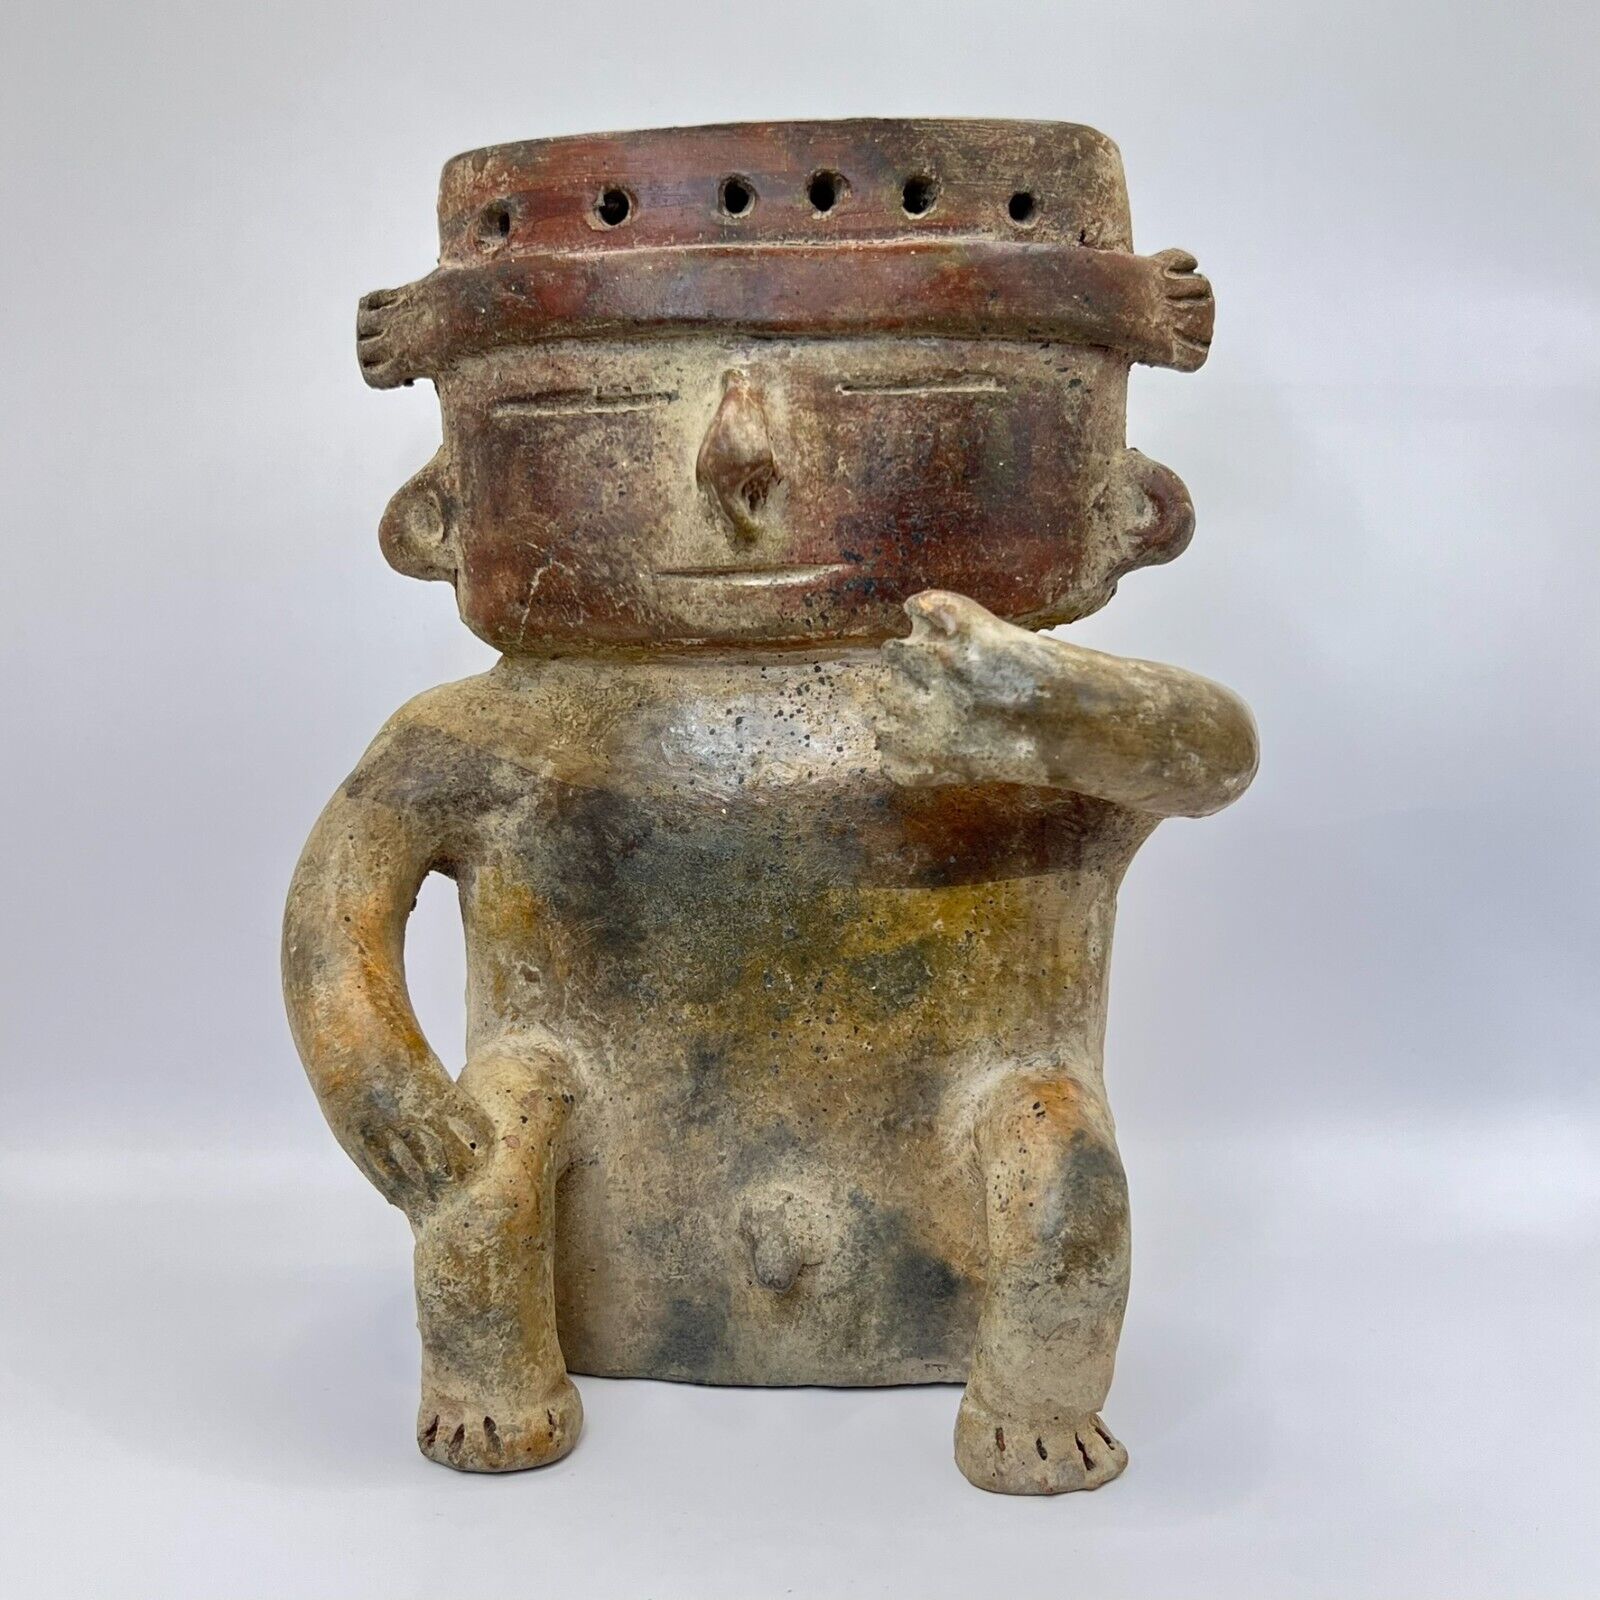 Collection Figures Pre-Columbian Quimbaya Altarpieces, Quimbaya Culture